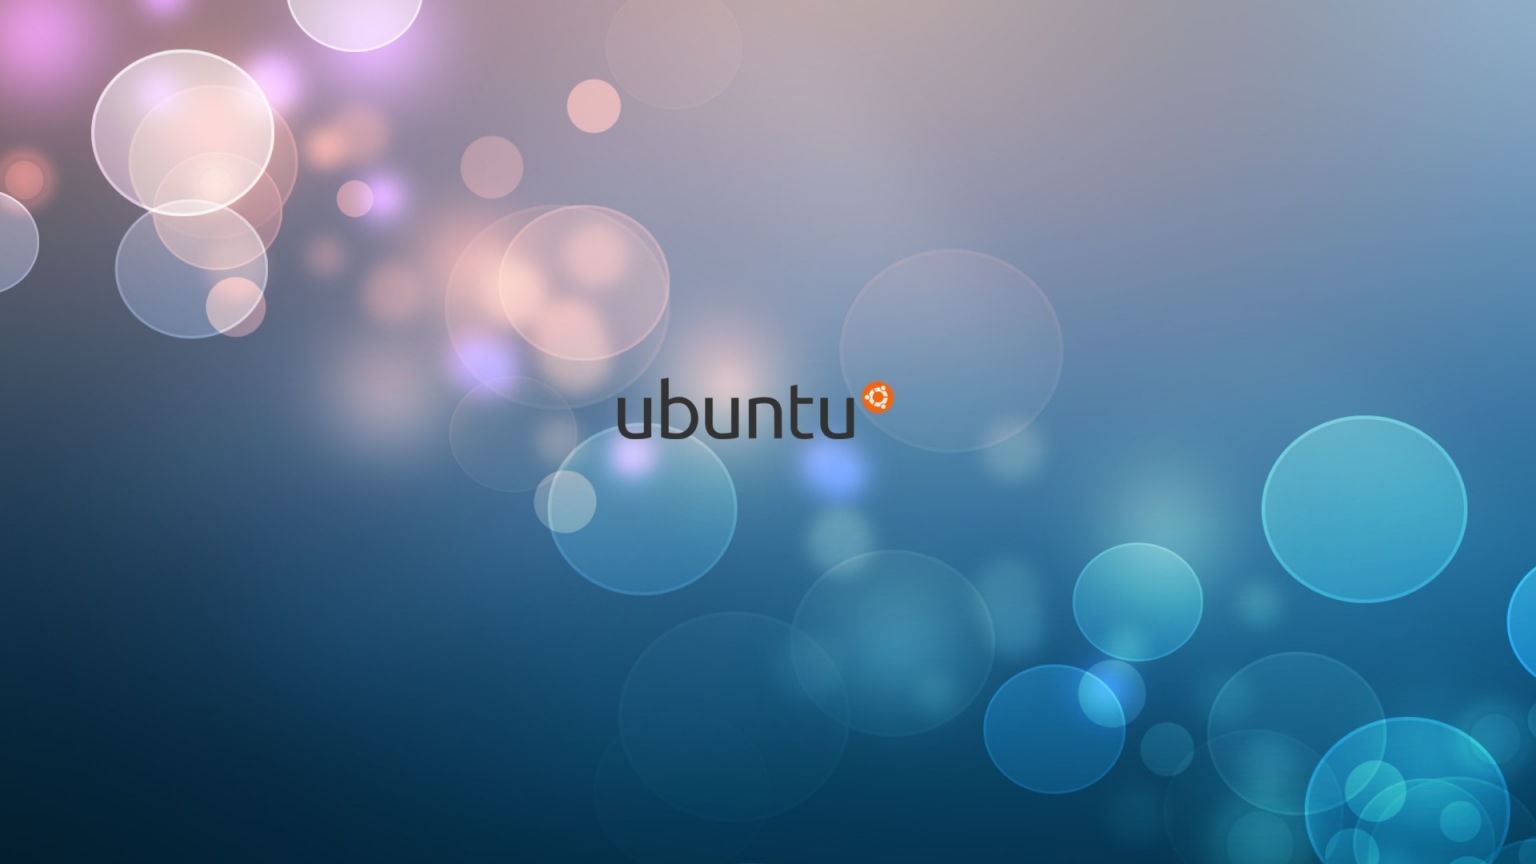 Ubuntu Minimalistic for 1536 x 864 HDTV resolution